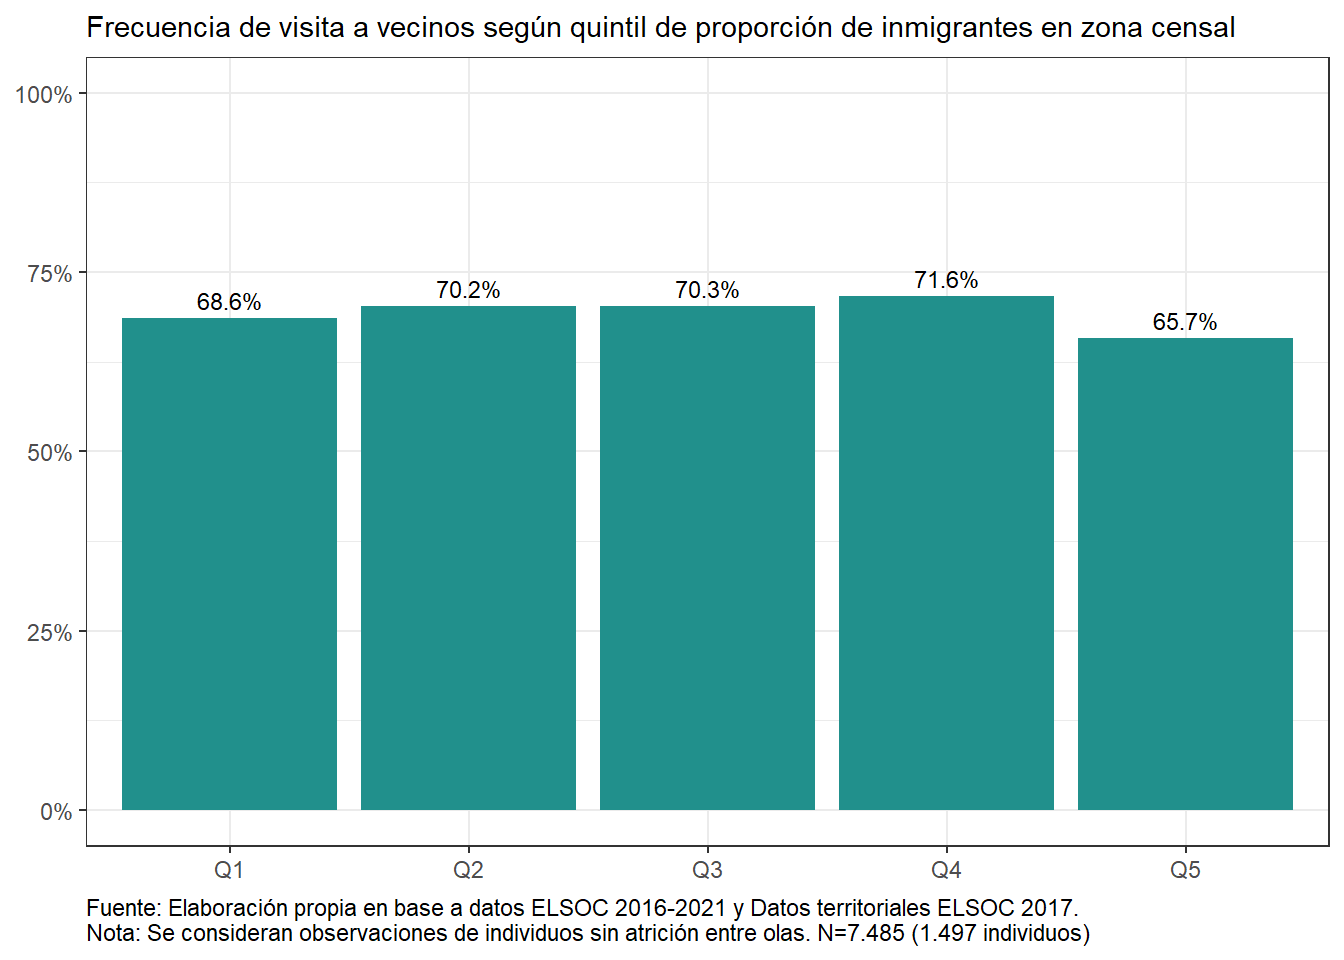 Frecuencia de visita a vecinos según quintil de inmigrantes